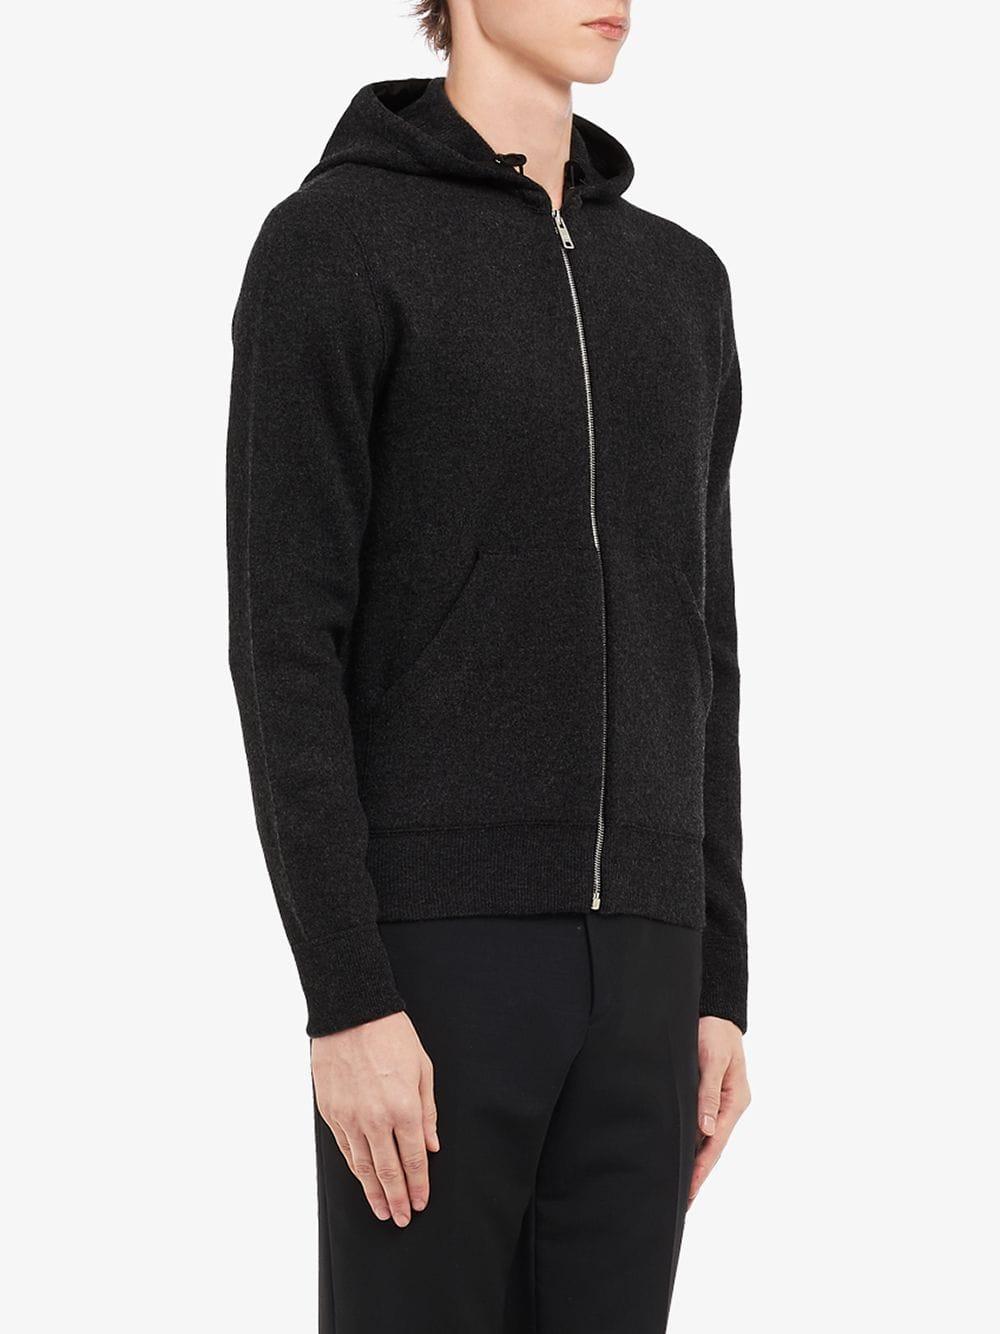 Prada Wool Knitted Hoodie in Black for Men - Lyst